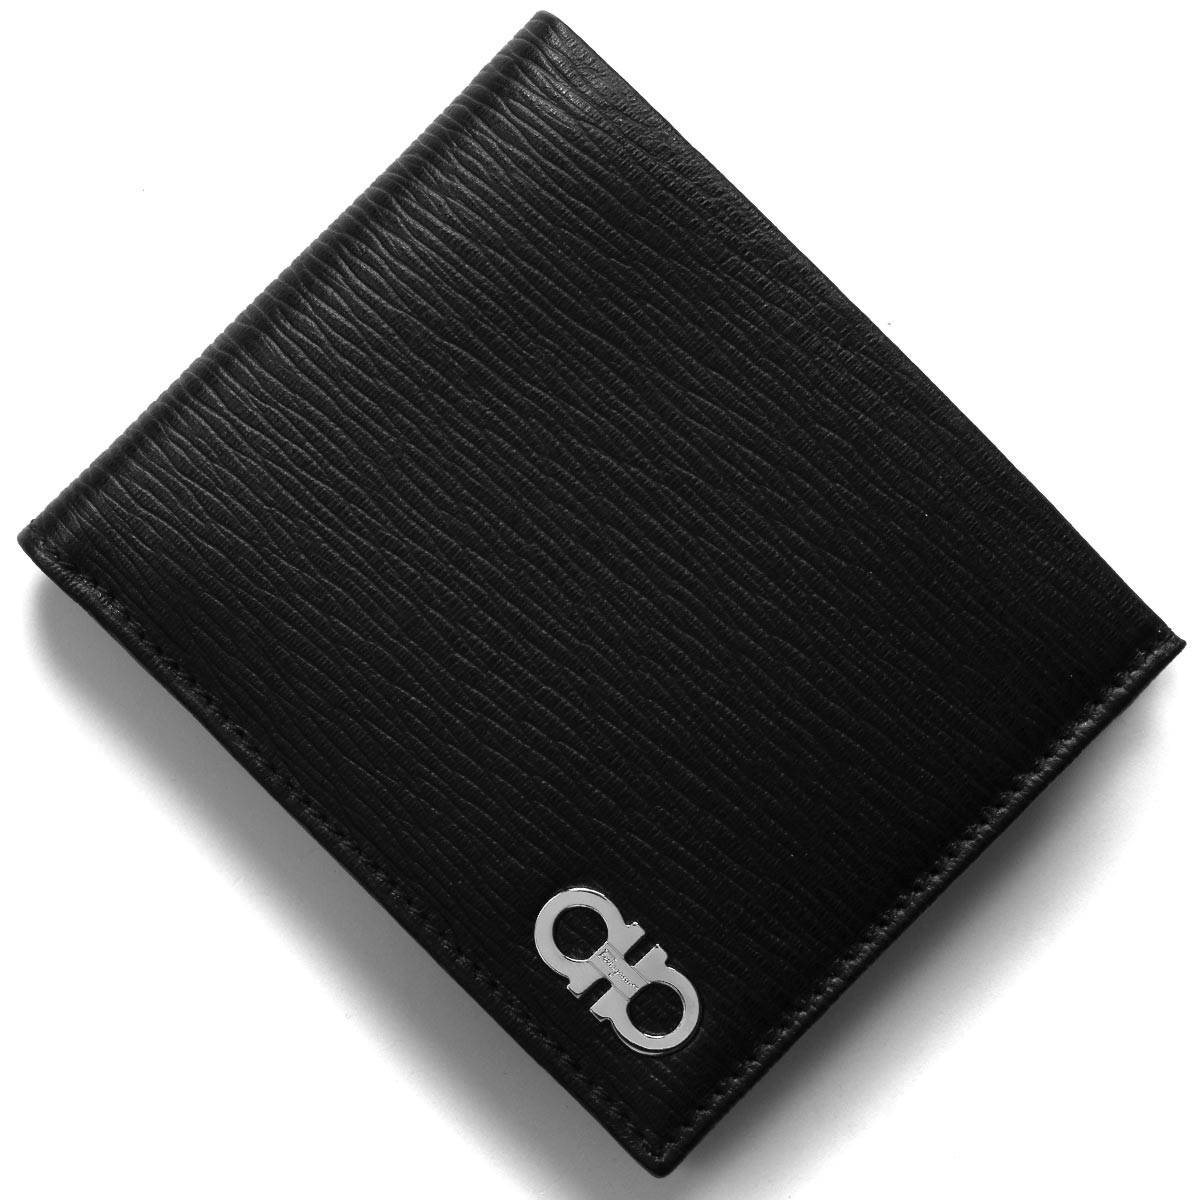 フェラガモ ガンチーニ 二つ折り財布 黒× シルバー金具 イタリア製✨未使用級✨